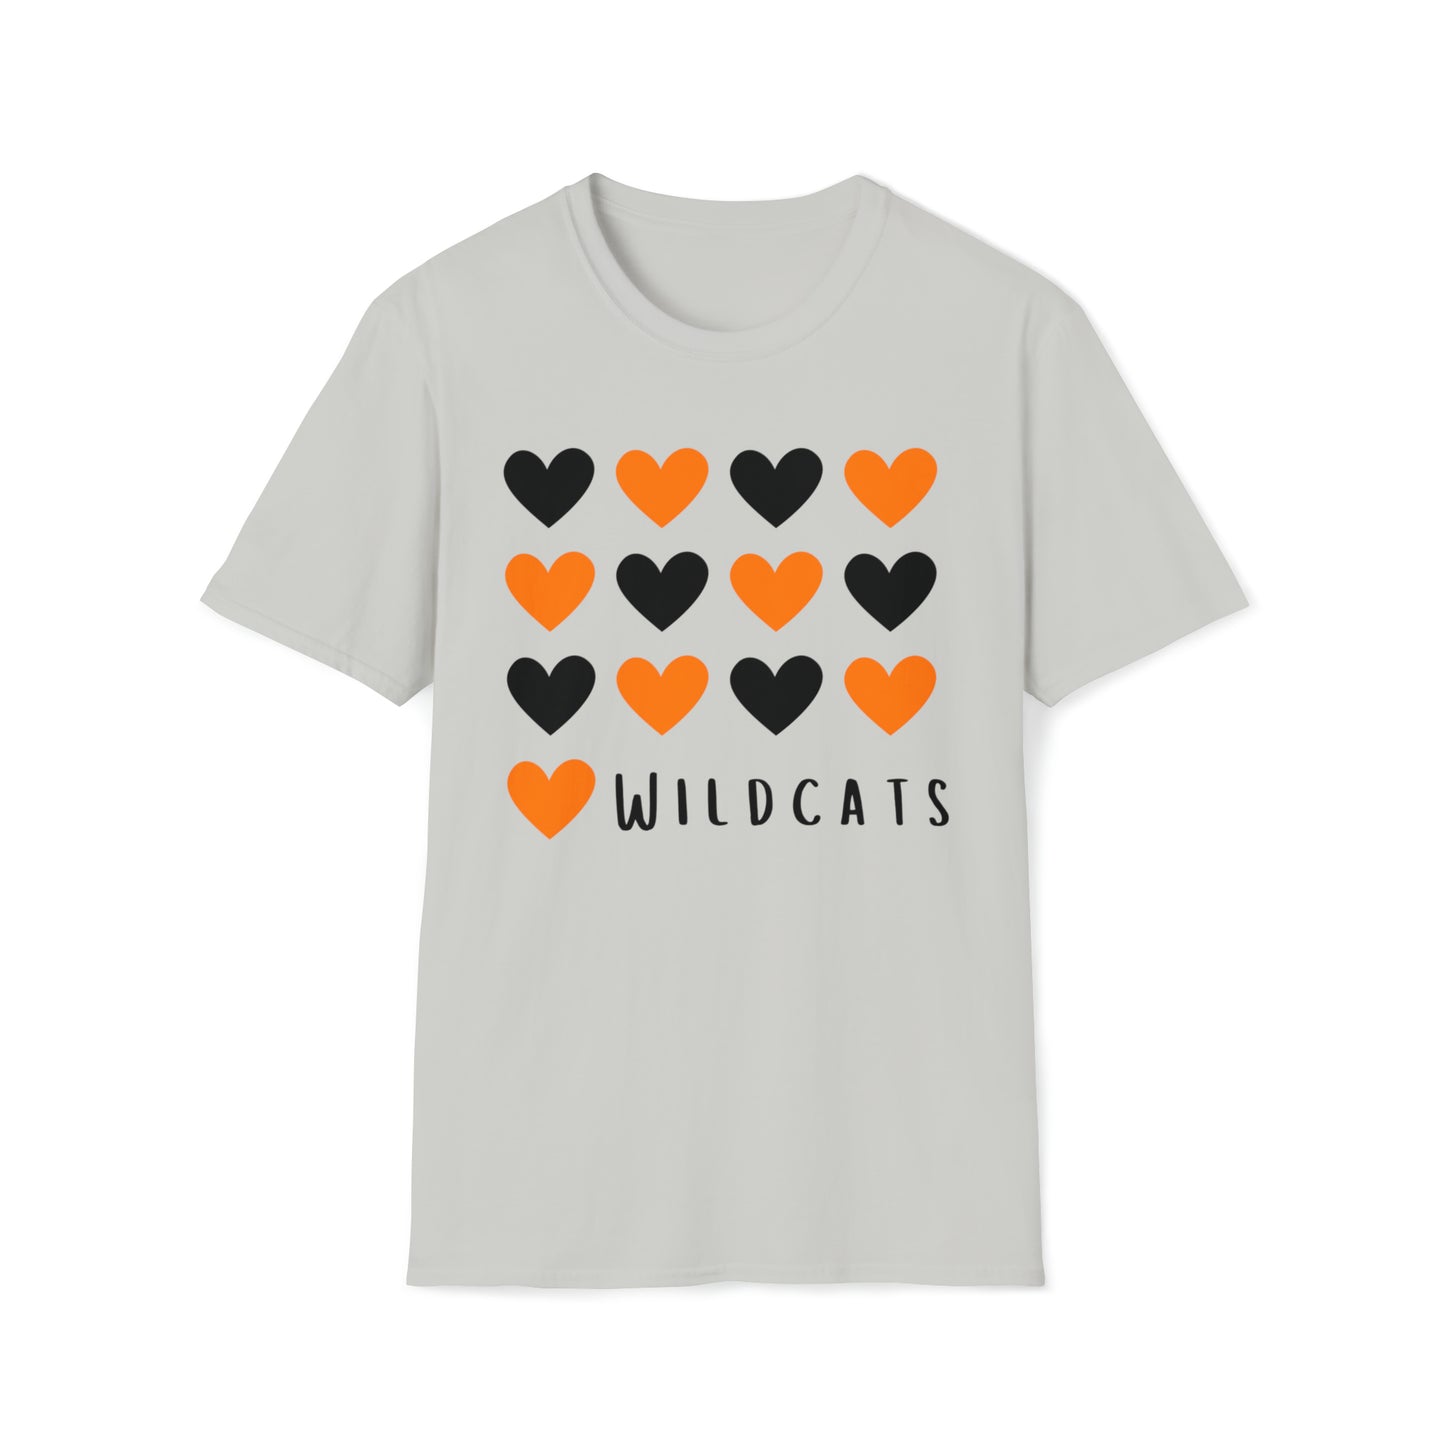 I HEART Verona Wildcats - Adult T-Shirt